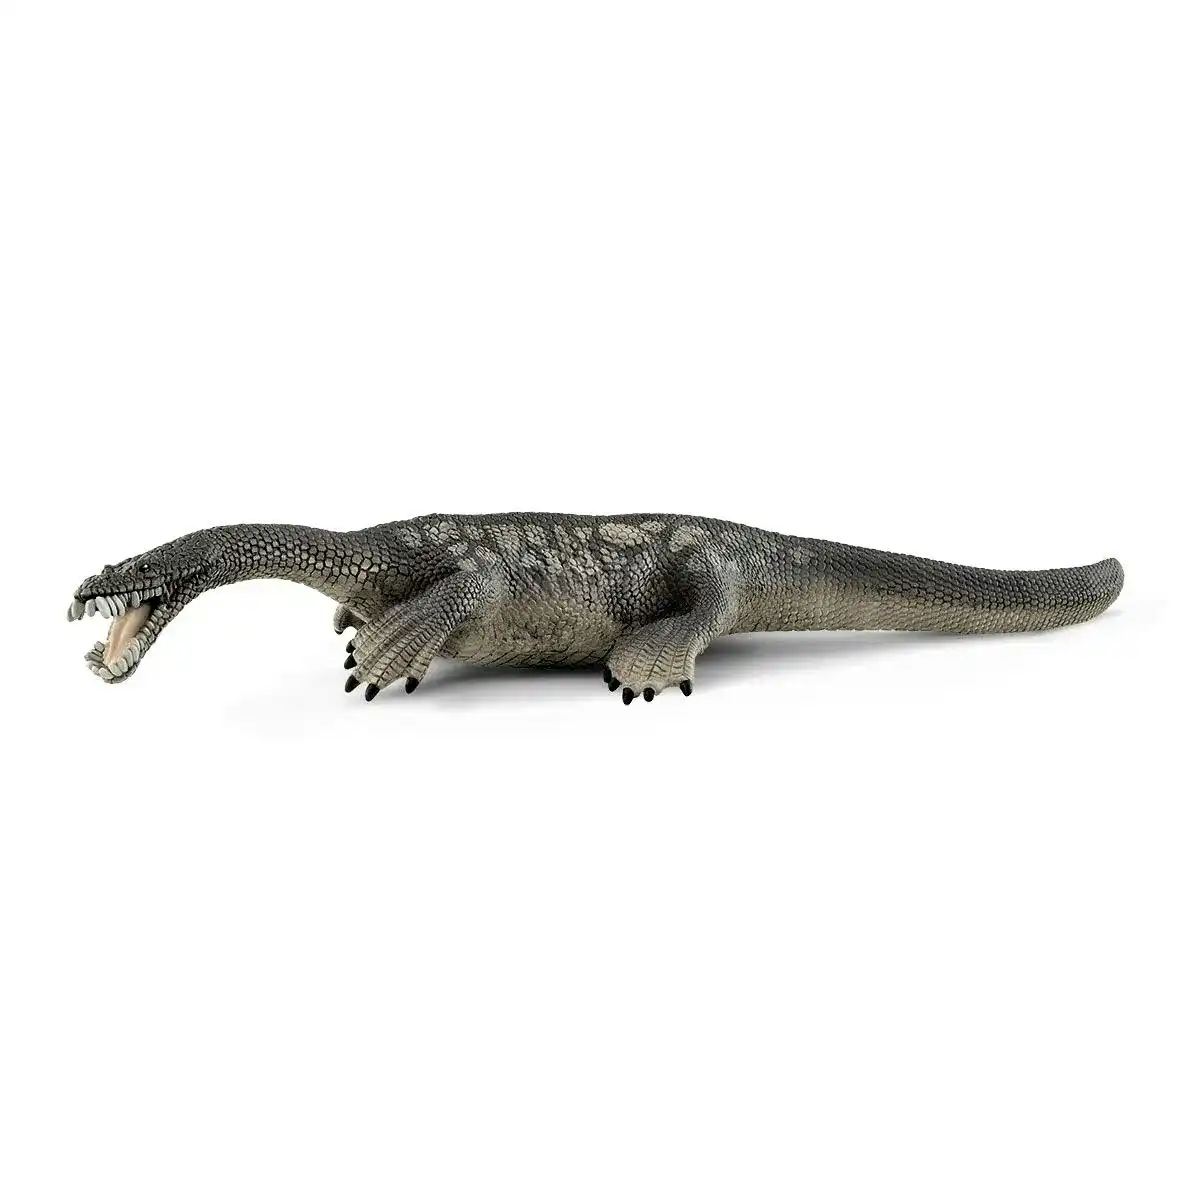 Schleich - Nothosaurus Dinosaur Figurine